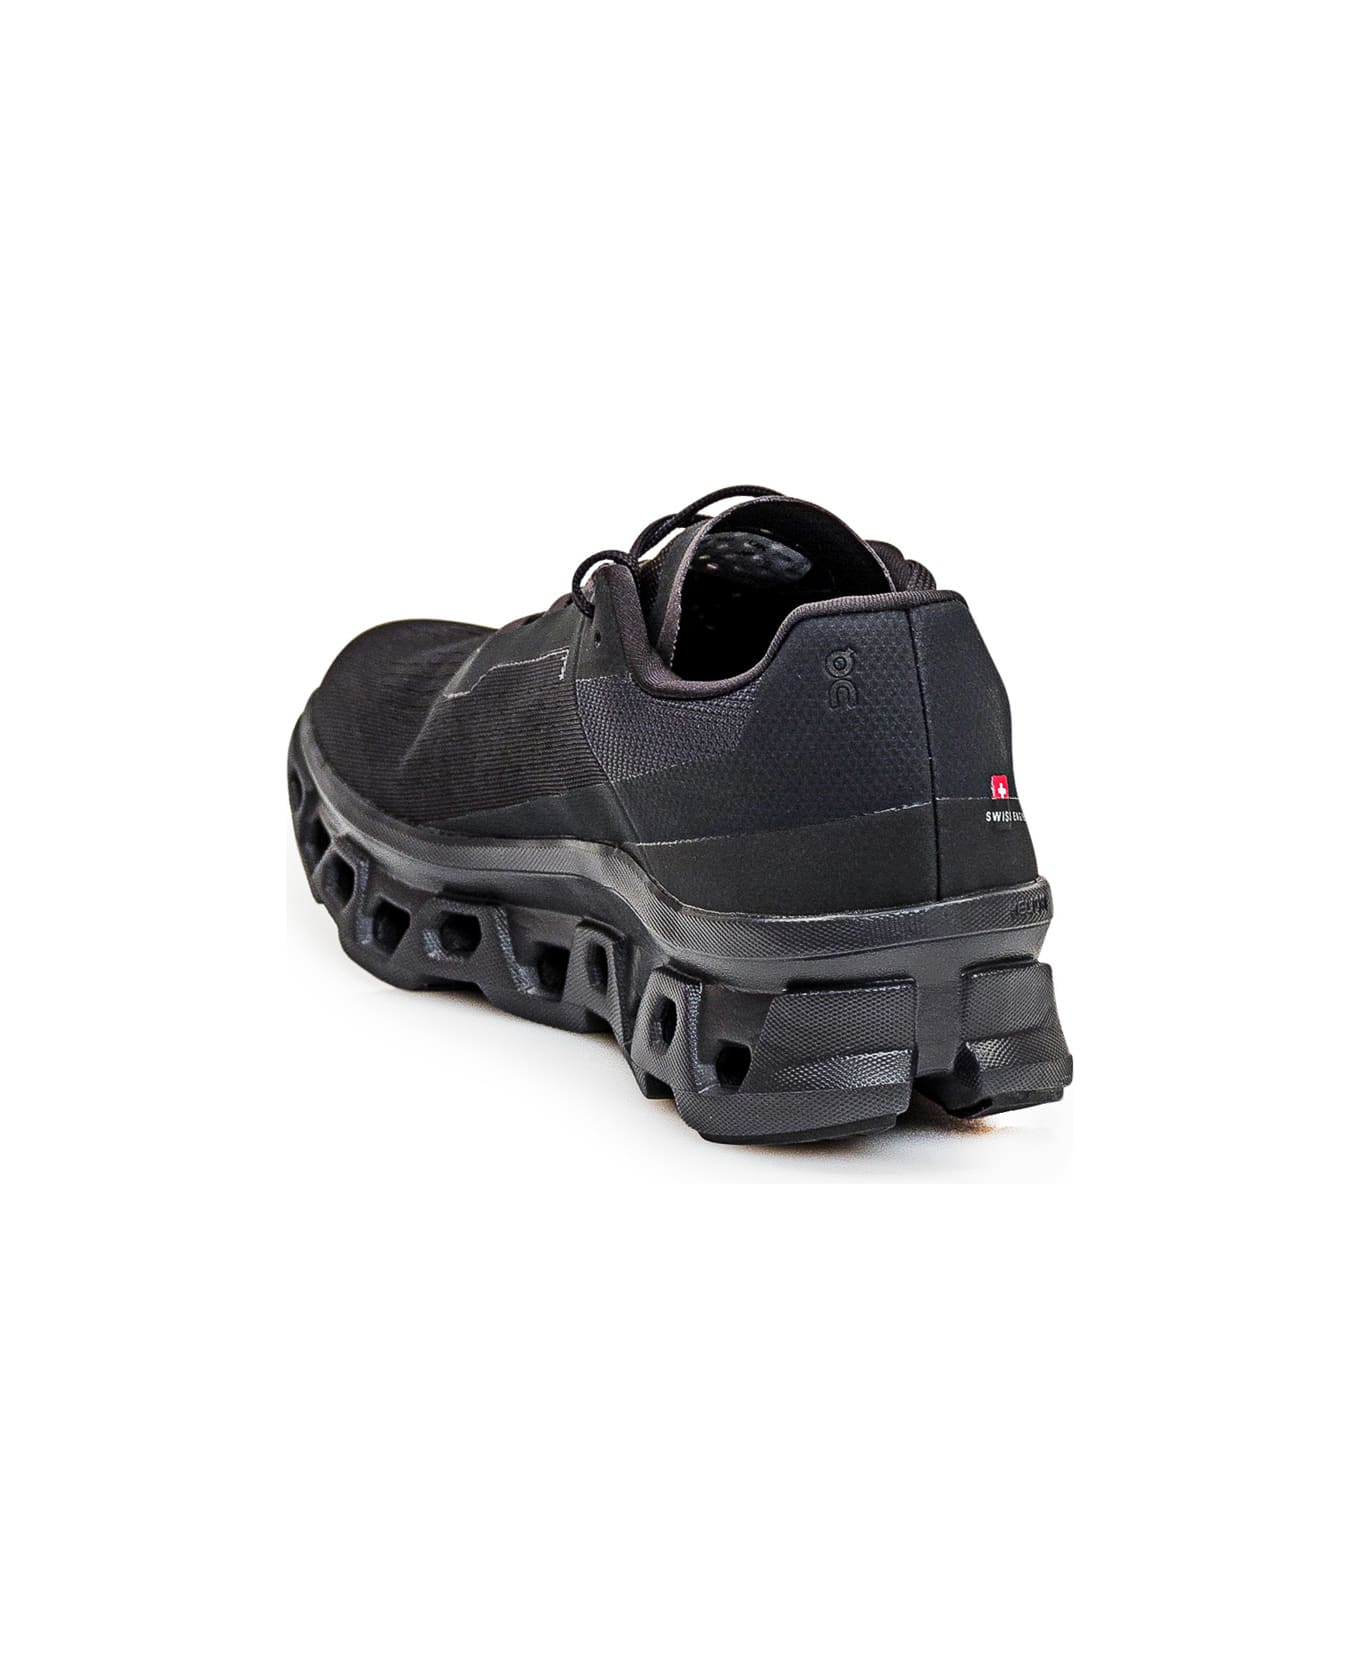 ON Sneaker Cloudmonster - DUST/VAPOR